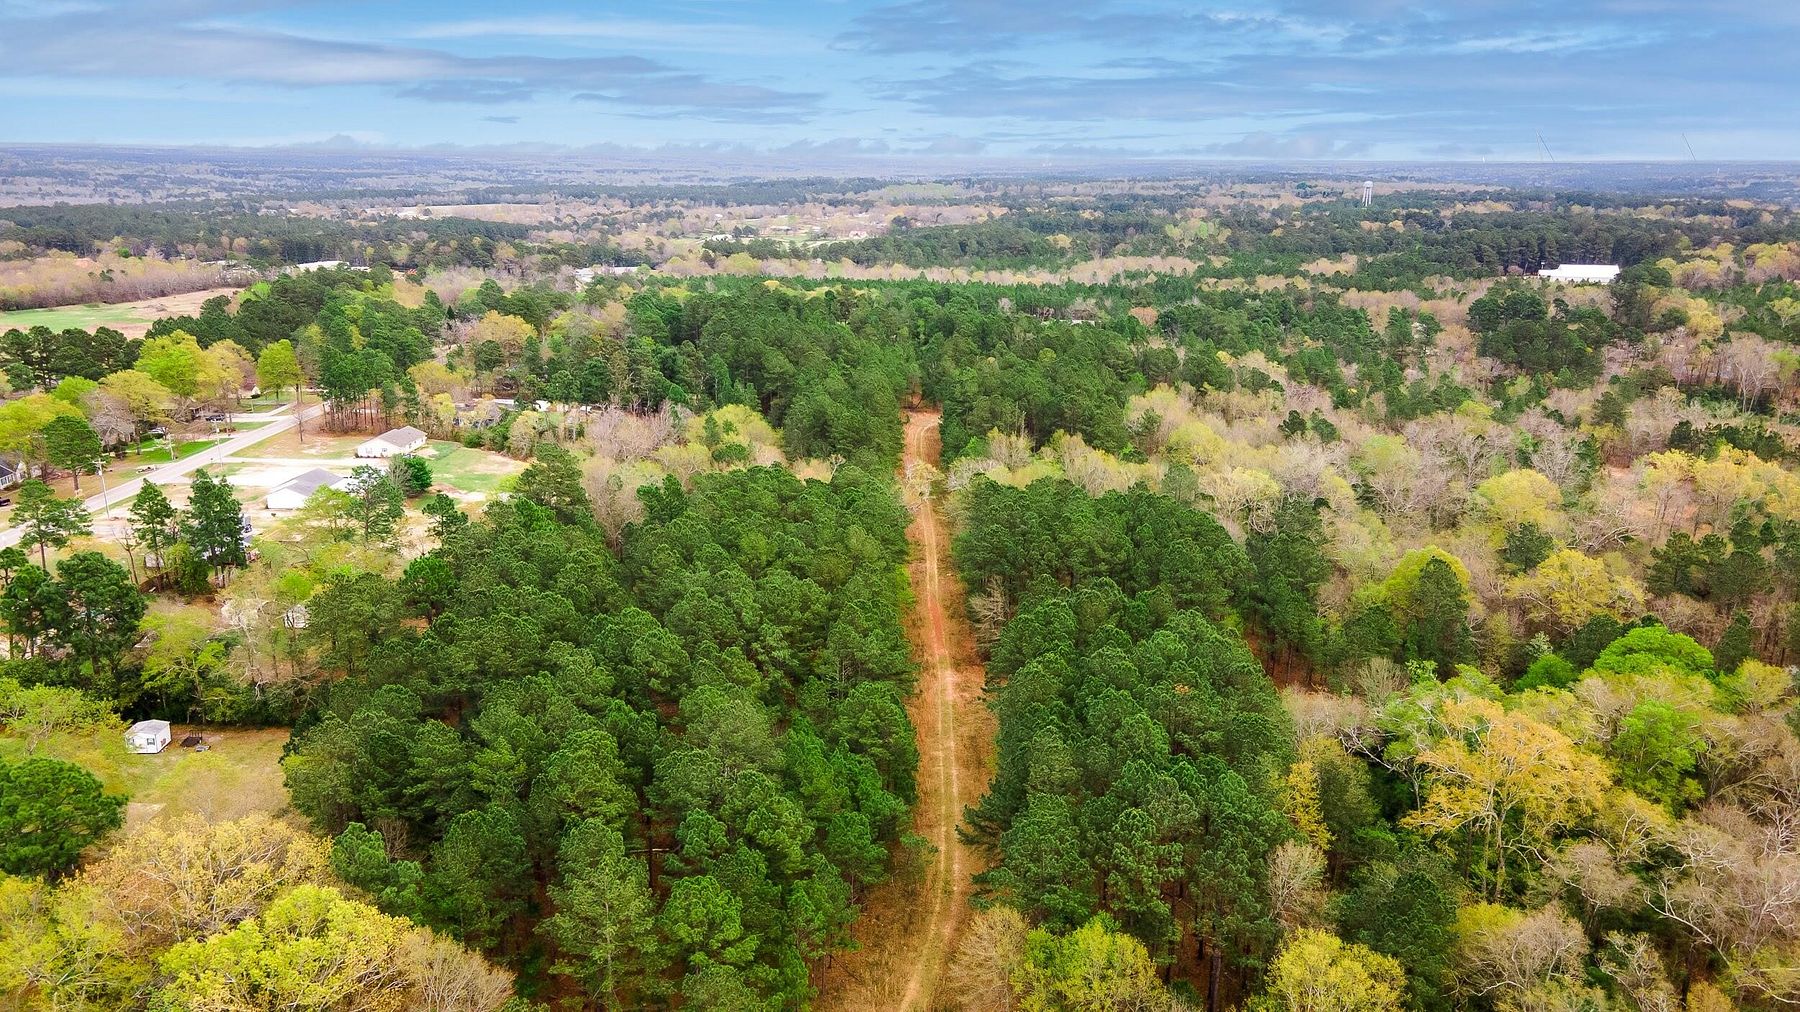 39.4 Acres of Land for Sale in Aiken, South Carolina